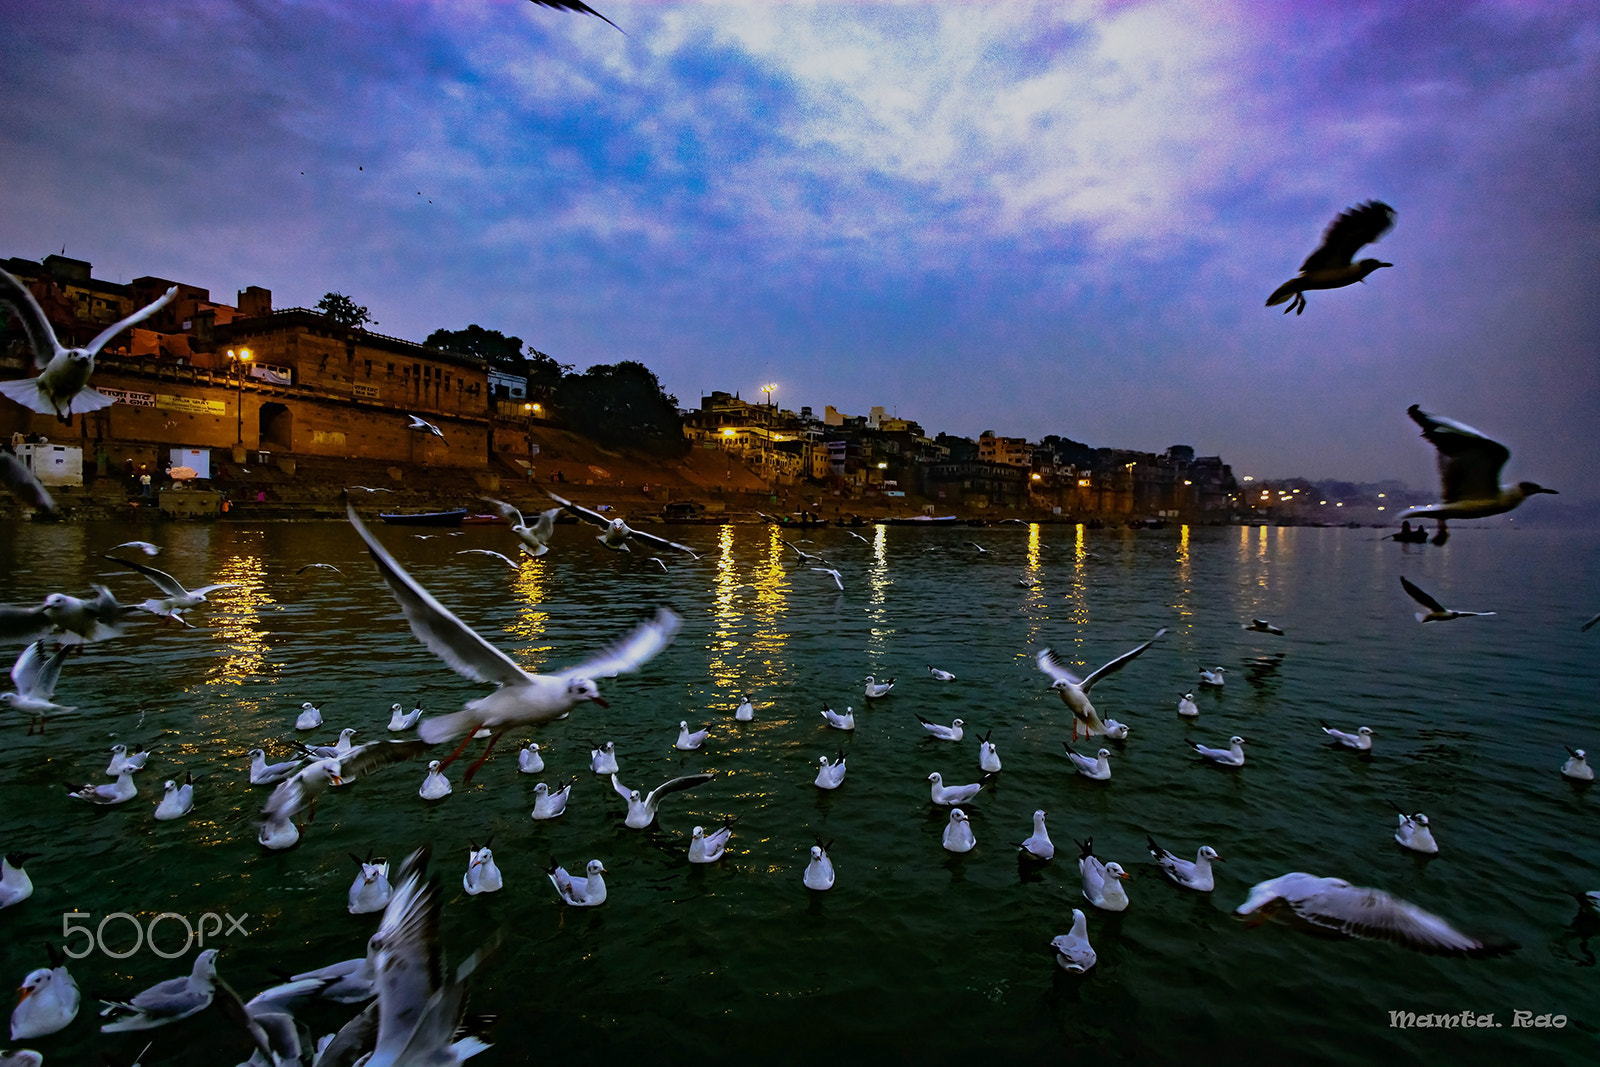 Nikon D7100 + Tamron SP AF 10-24mm F3.5-4.5 Di II LD Aspherical (IF) sample photo. Varanasi at dawn photography